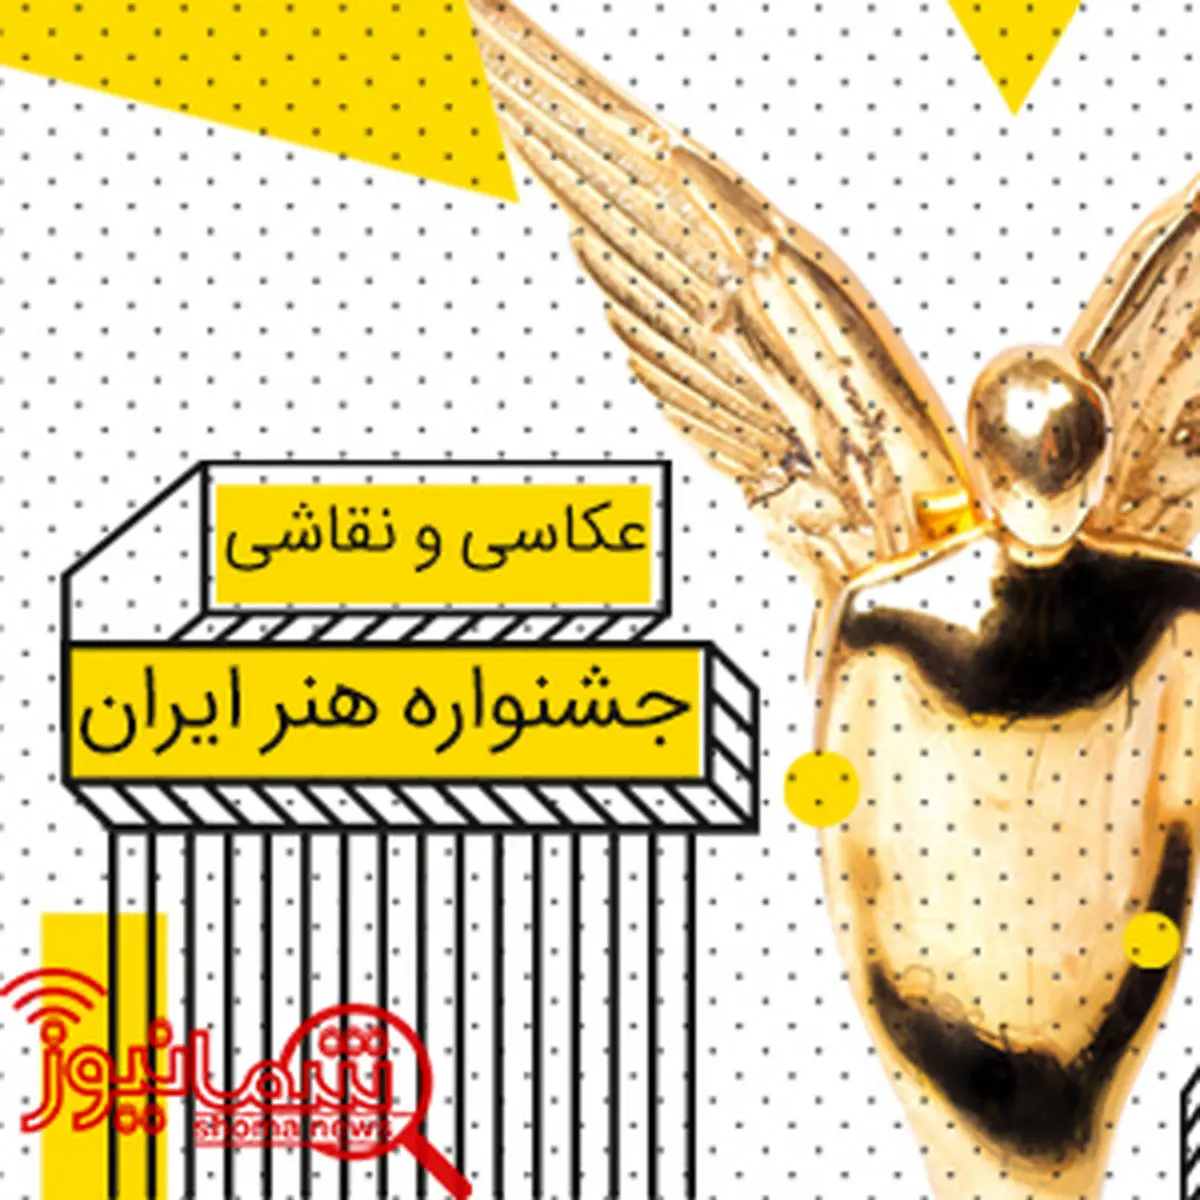 فراخوان سالانه جشنواره هنر ایران اعلام شد